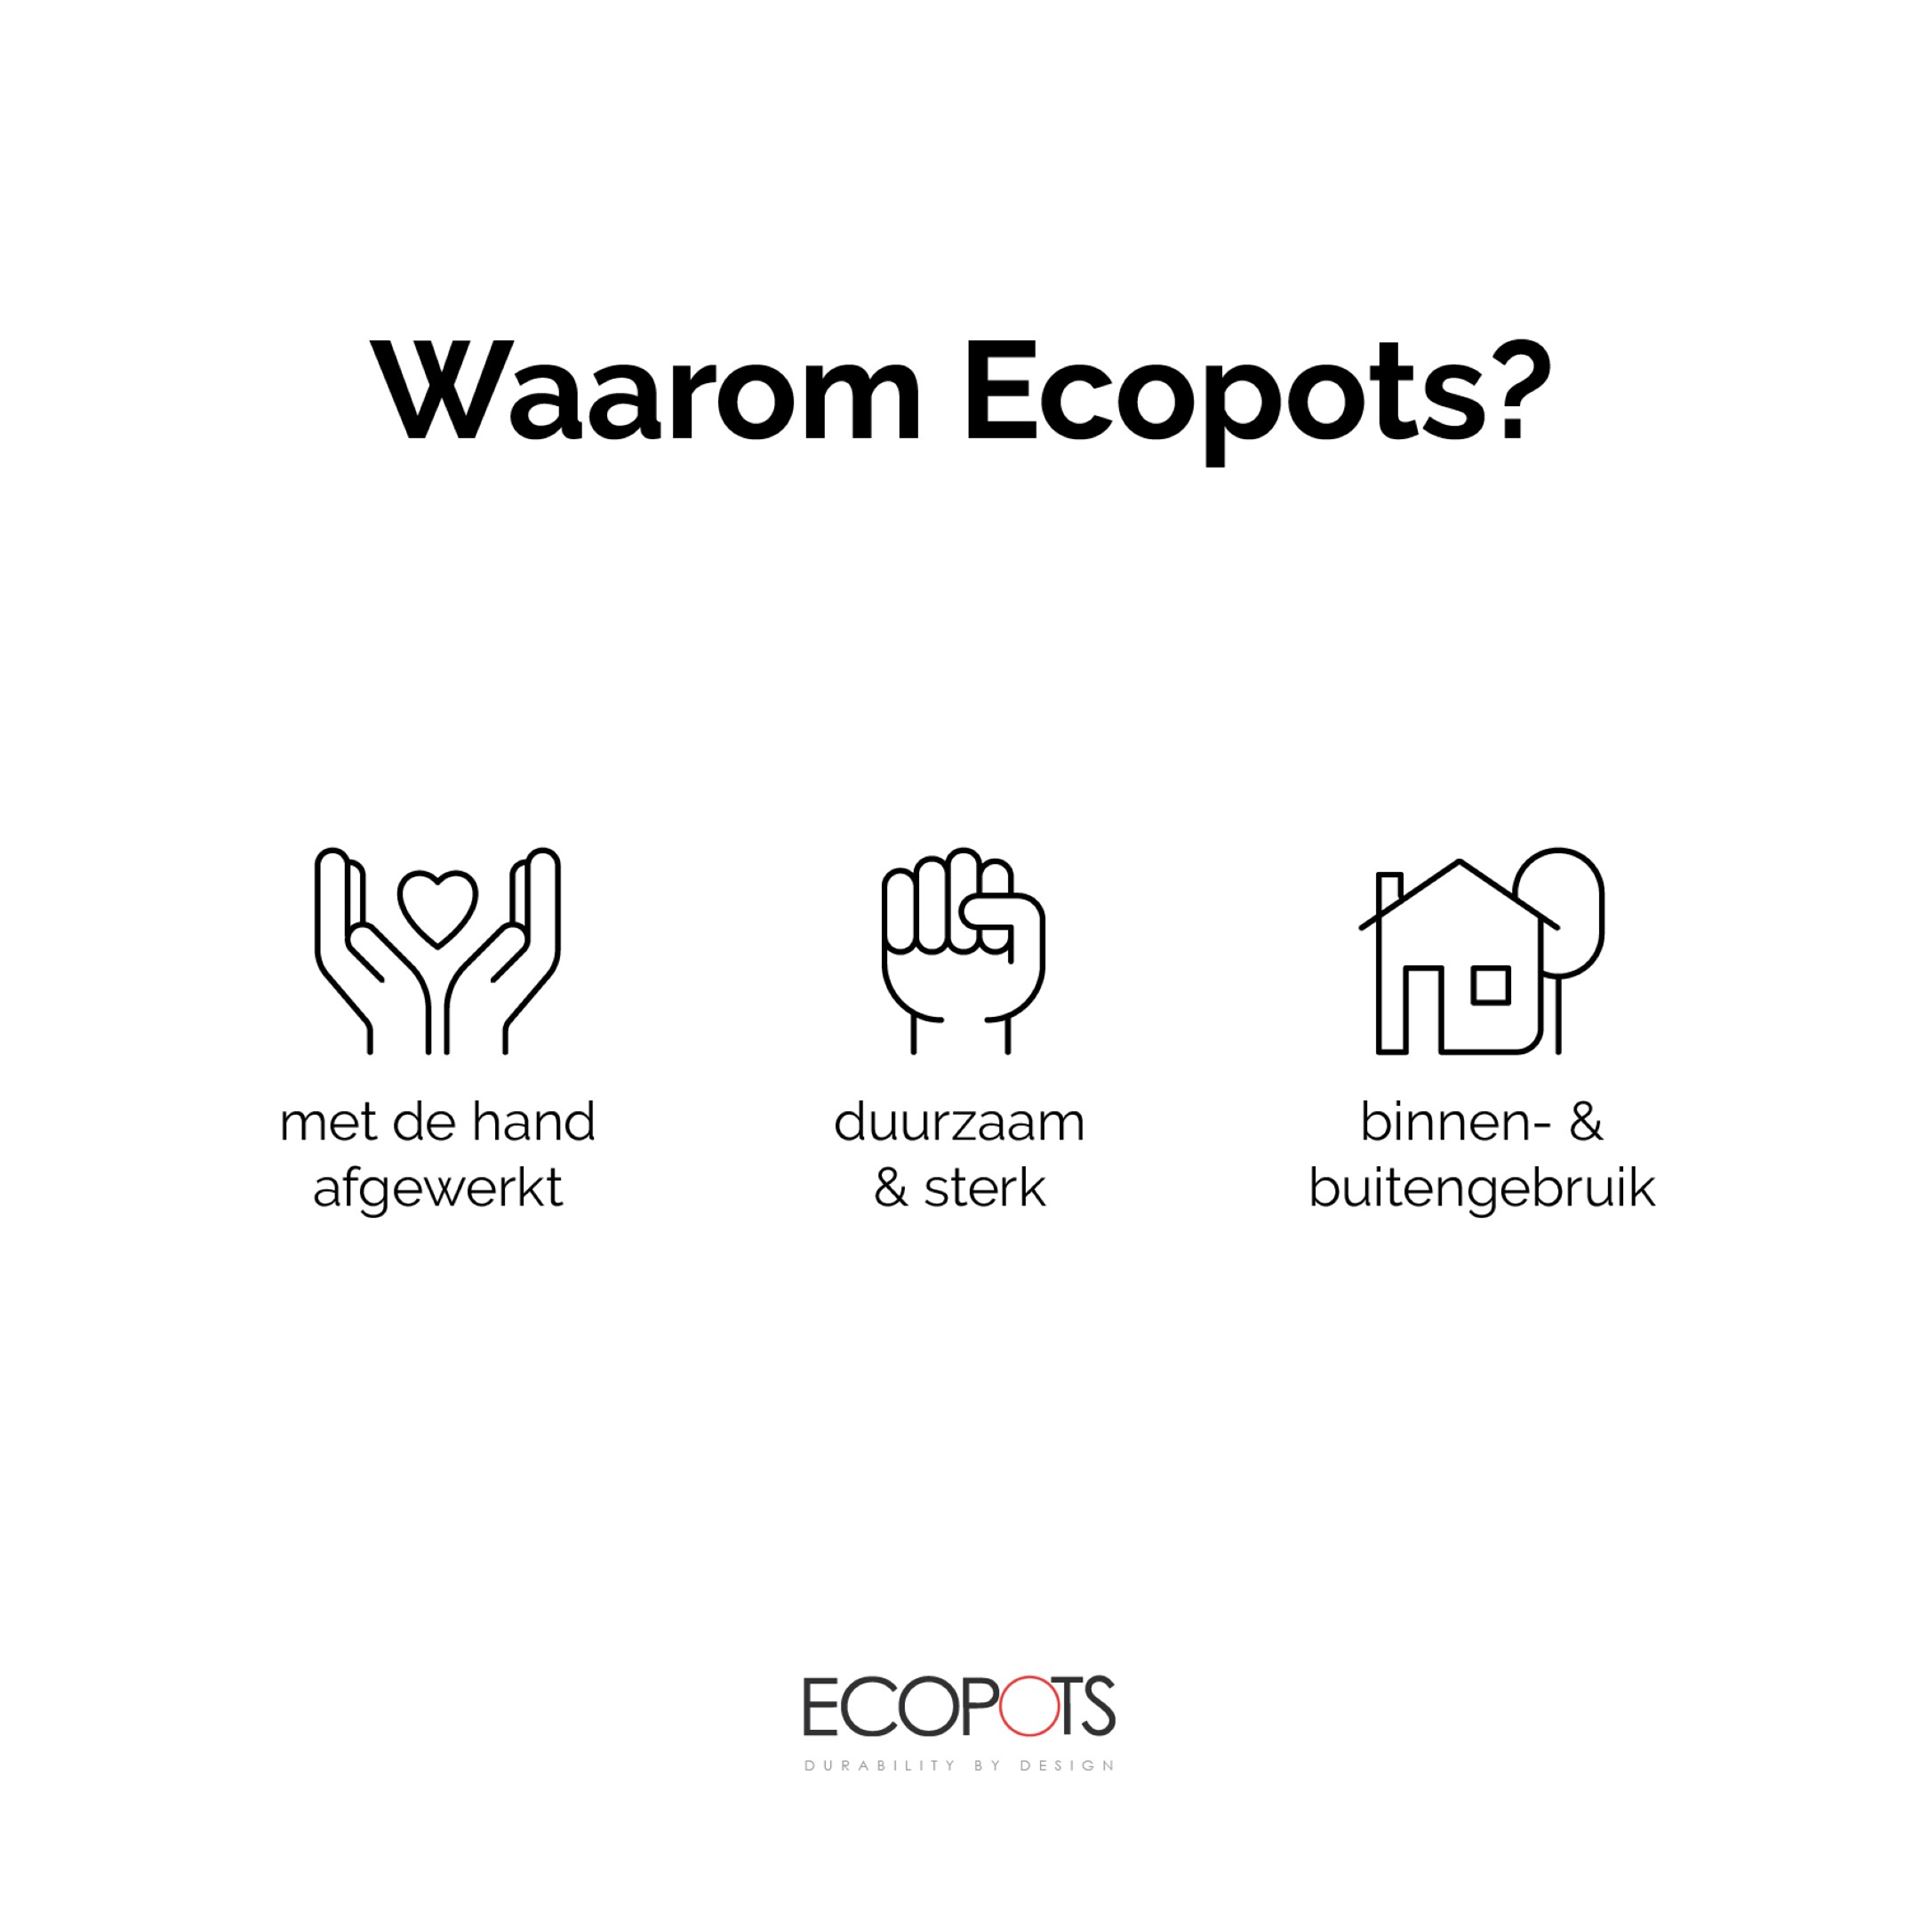 Ecopots-onderschotel-rond-met-wielen-white-grey-40-cm-H9-cm